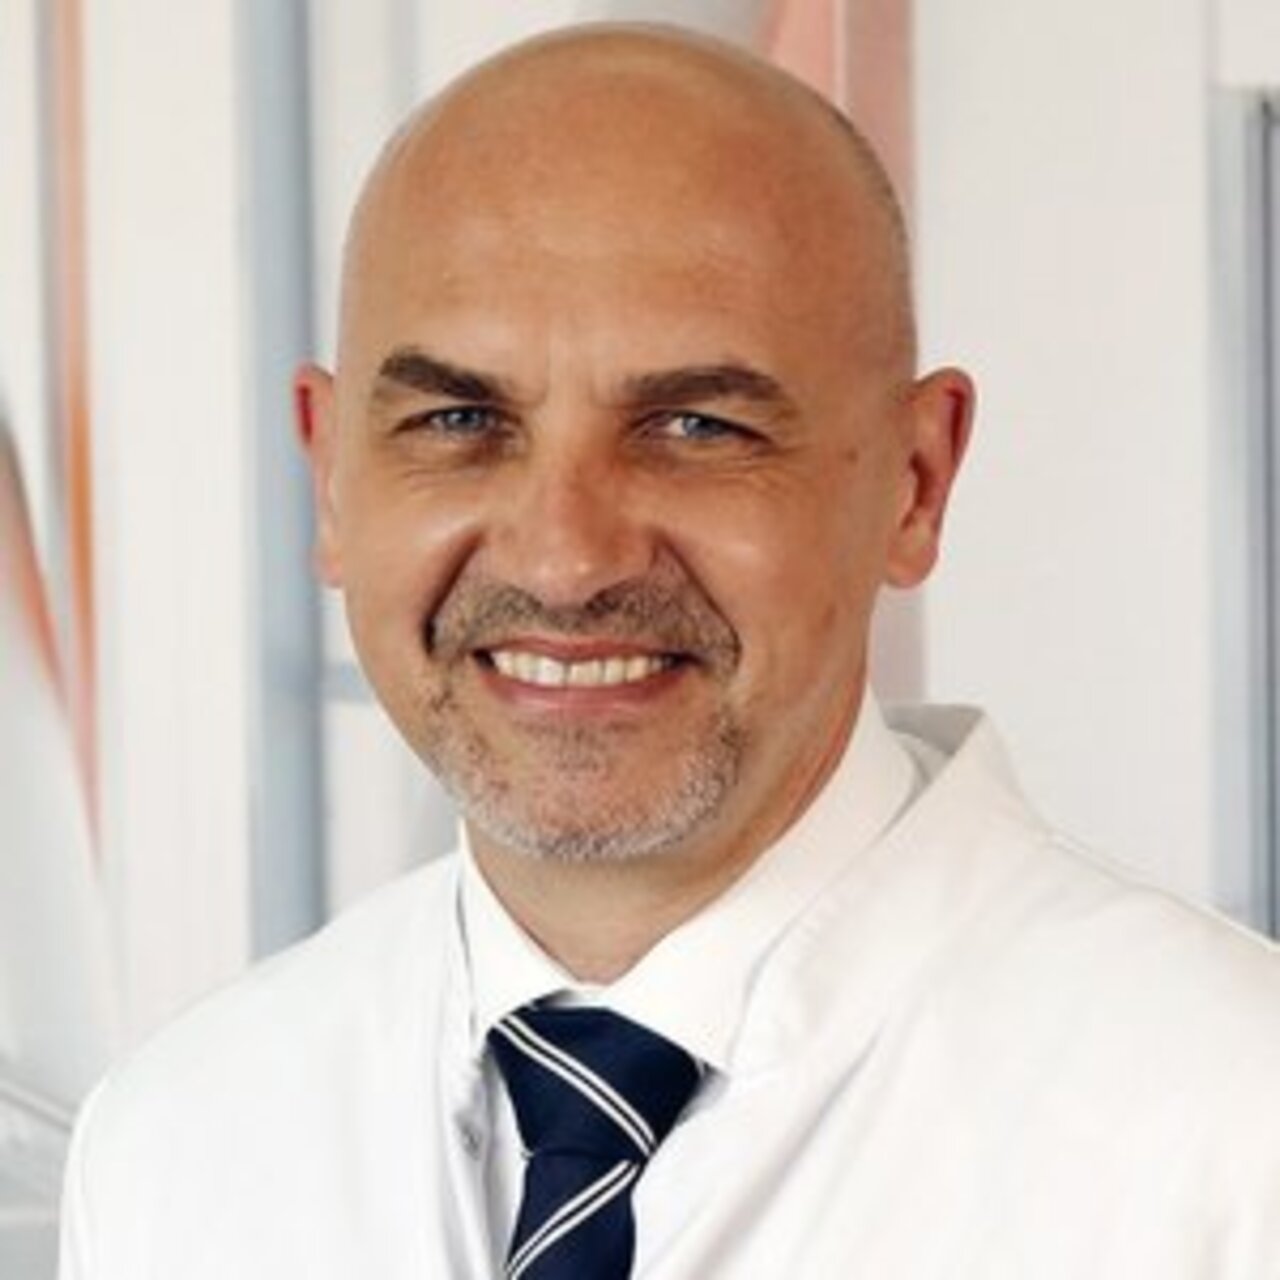 PD Dr. Thomas Schmandra - Portrait